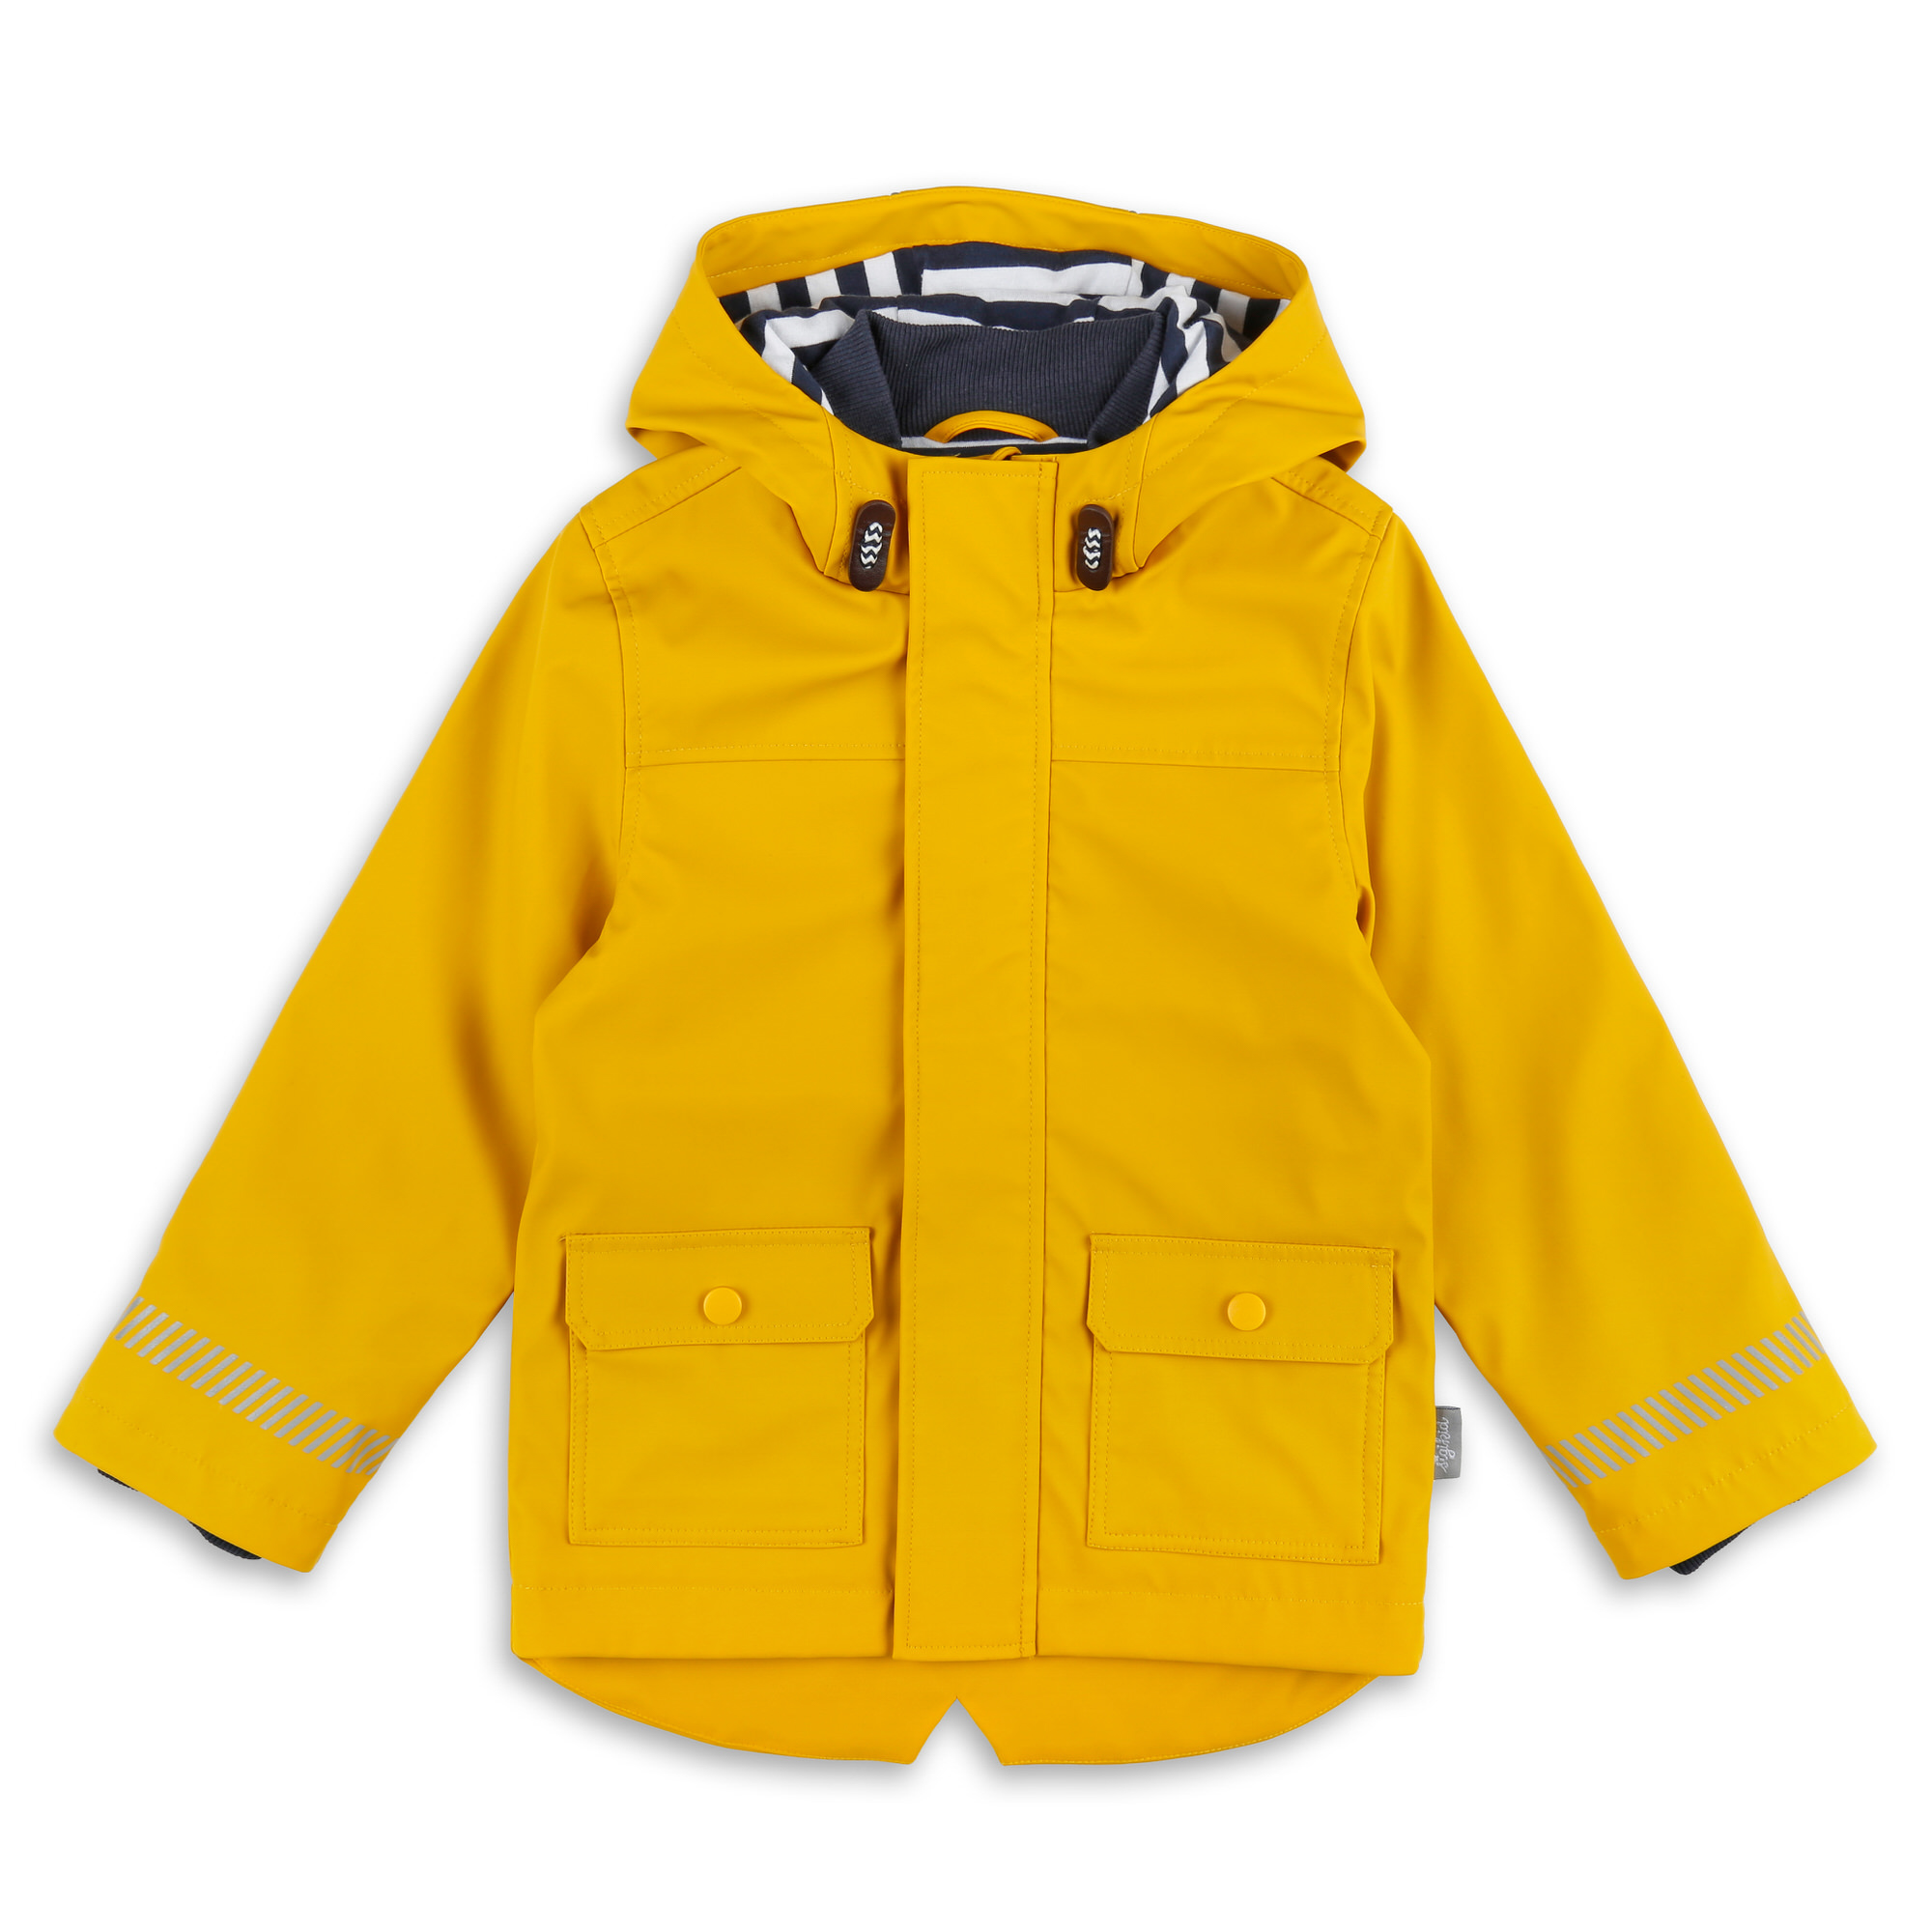 Kids' rain jacket, lined, yellow